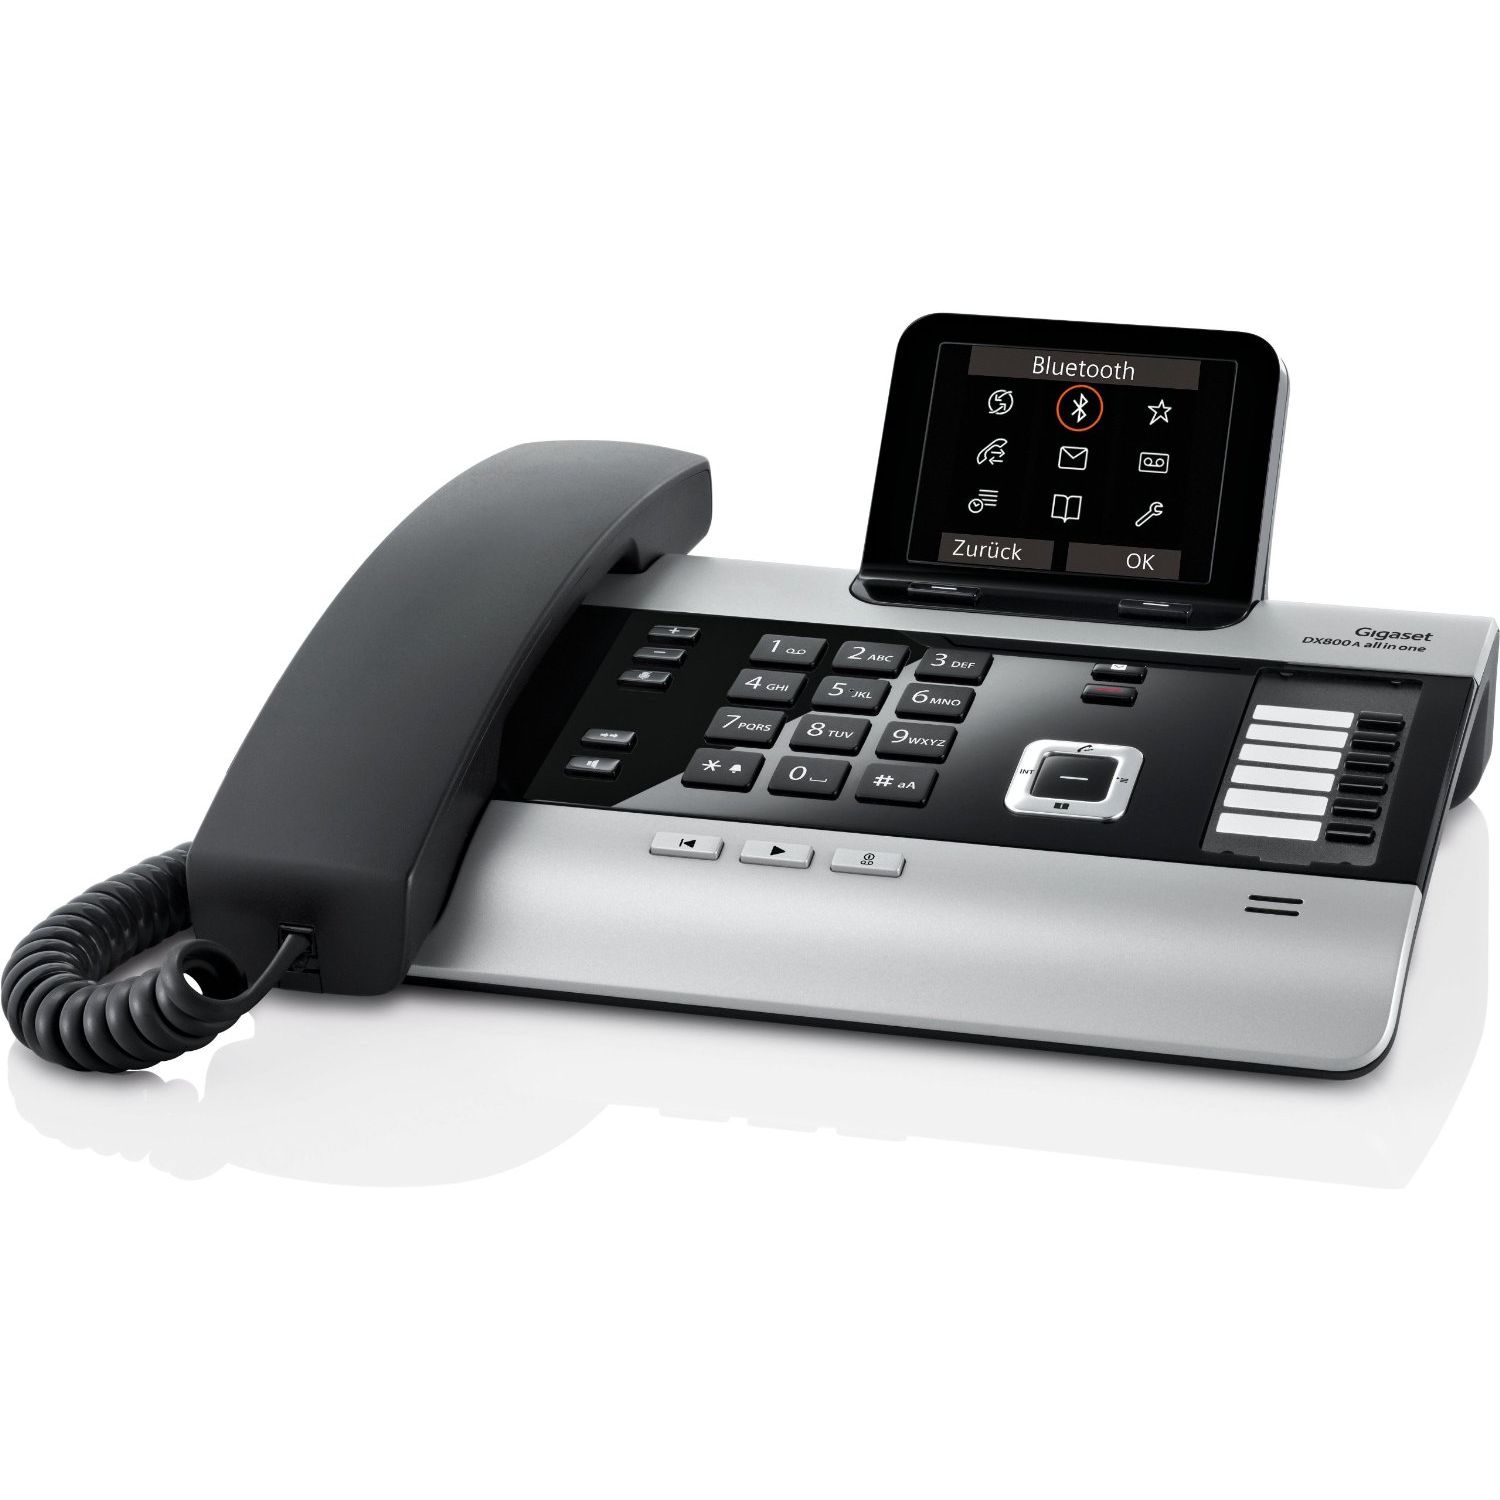 Телефон с радиотрубкой. VOIP-телефон Gigaset dx800a. All in one Gigaset dx800a. Телефон DECT Gigaset dx800a. Yealink t48u.